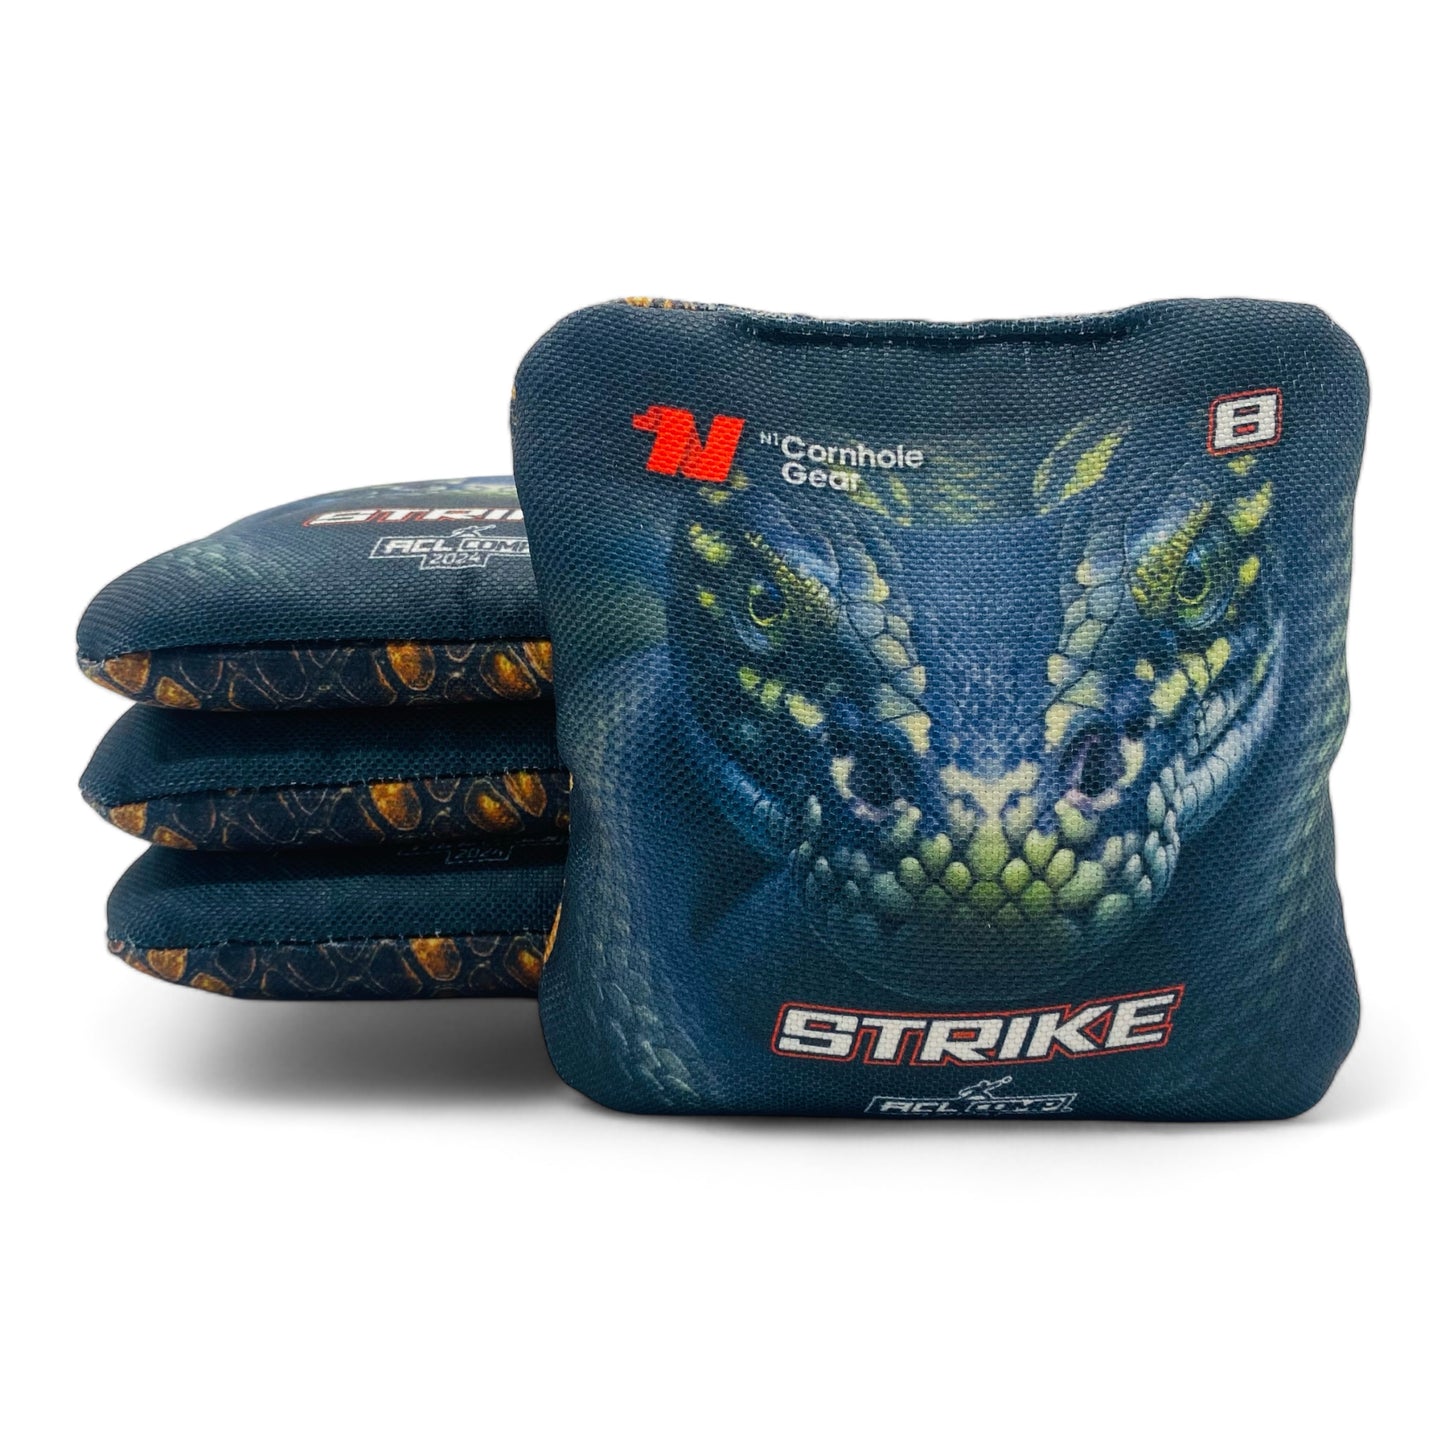 Strike | N1 Cornhole Gear | Cornhole Bags | Set of 4 | Speed: 5/8